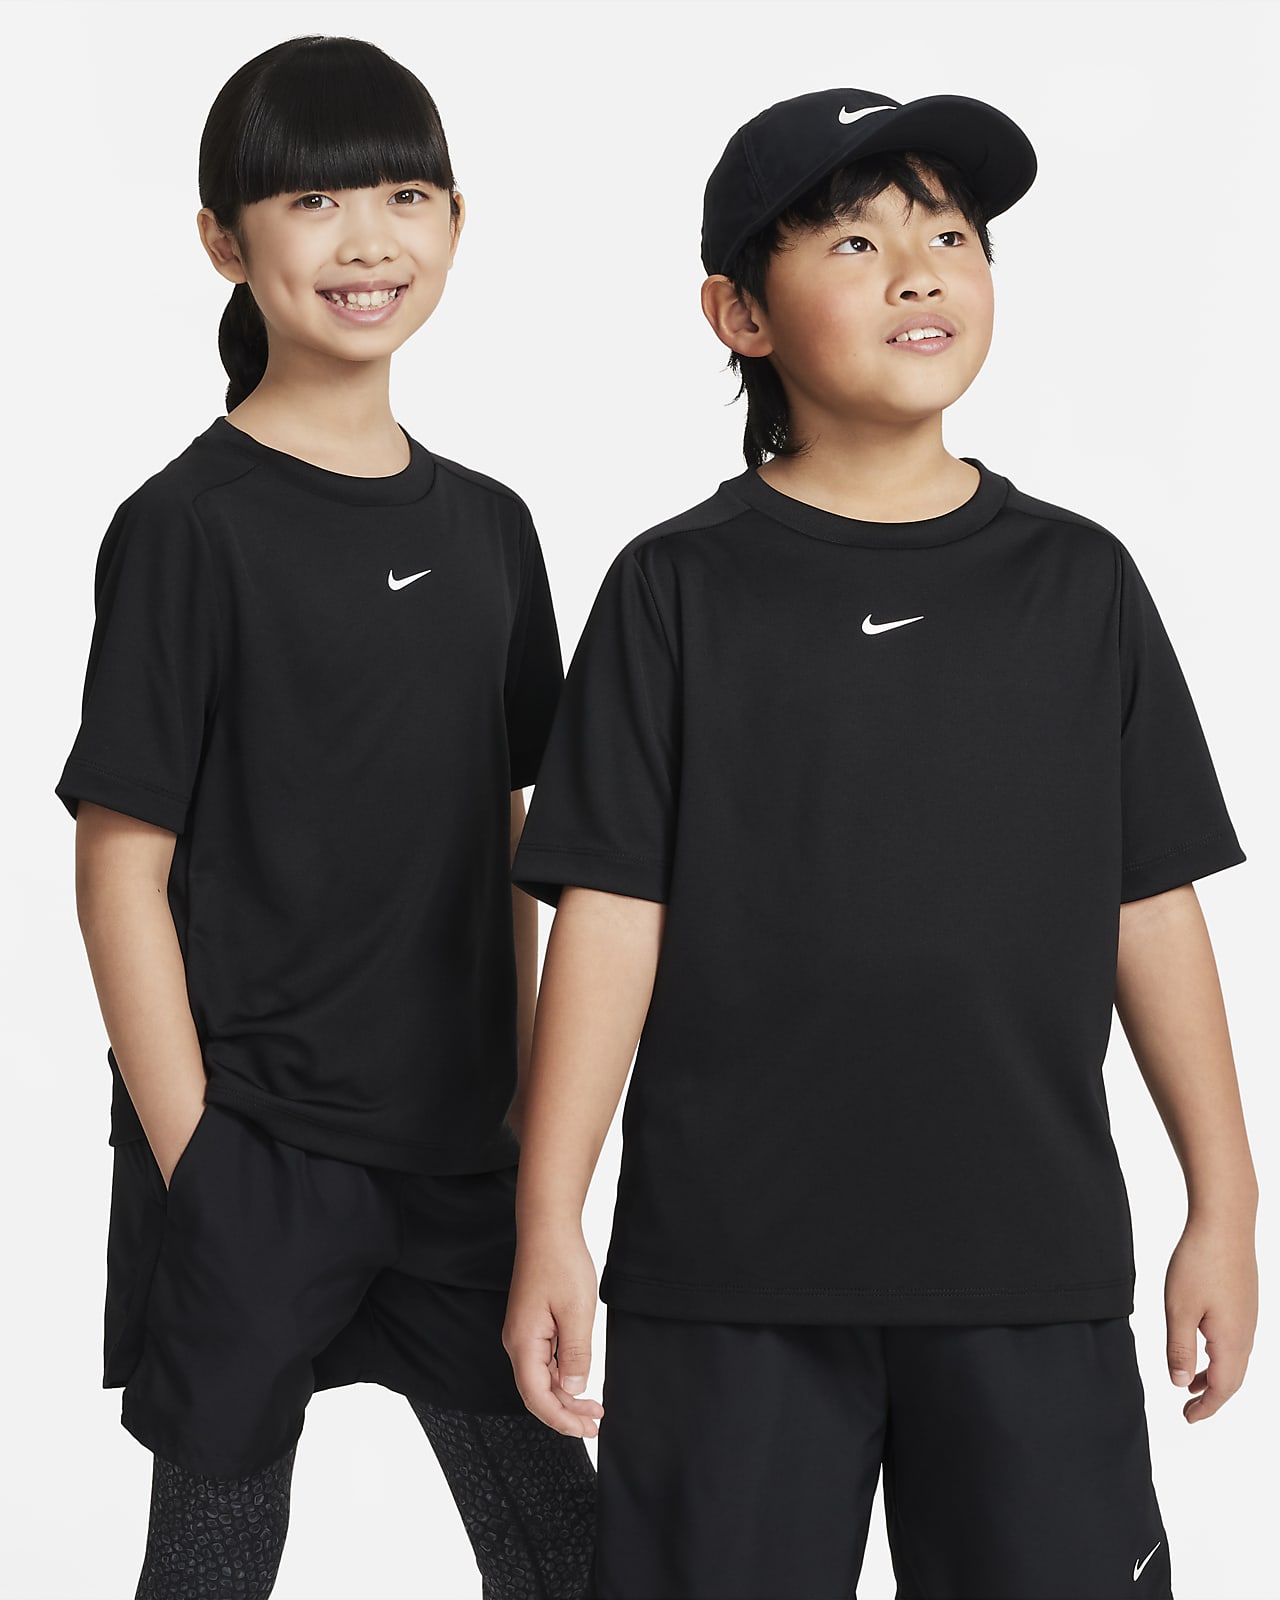 เสื้อเทรนนิ่ง Dri-FIT เด็กโต Nike Multi (ชาย)